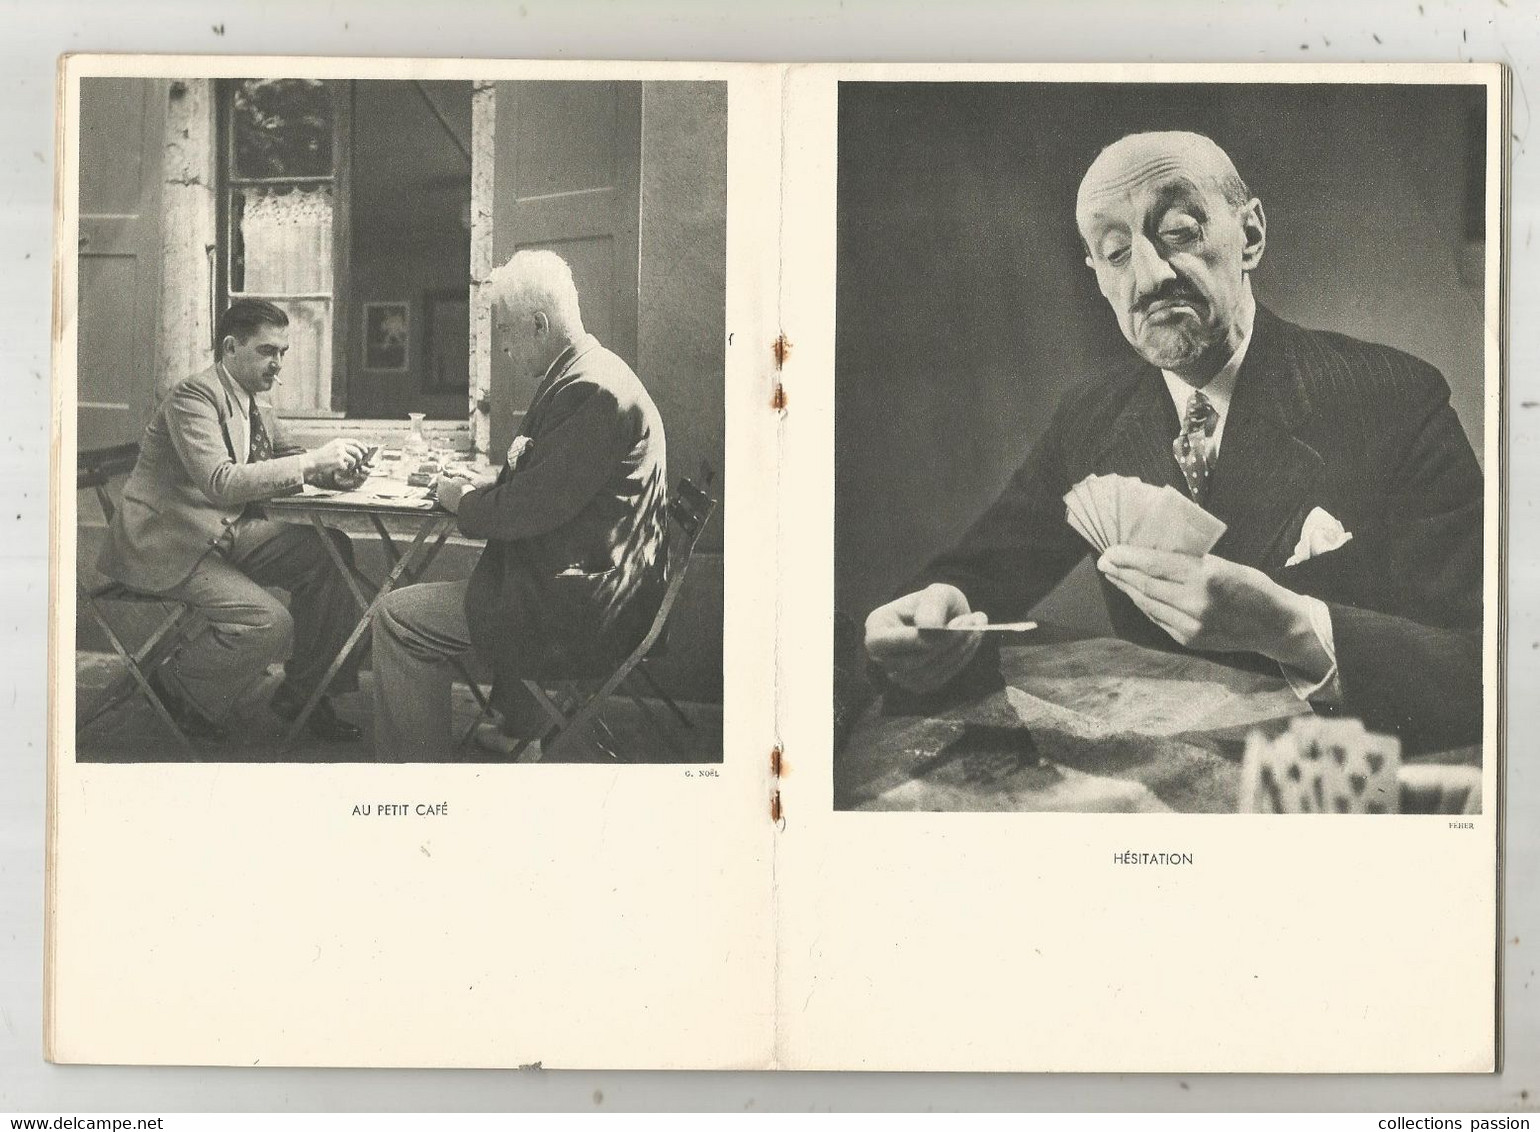 Photographie, Documents Photographiques , MIEUX VIVRE , LES CARTES Par T. Bernard, N° 1 , 1938,  Frais Fr 2.25 E - Photographie